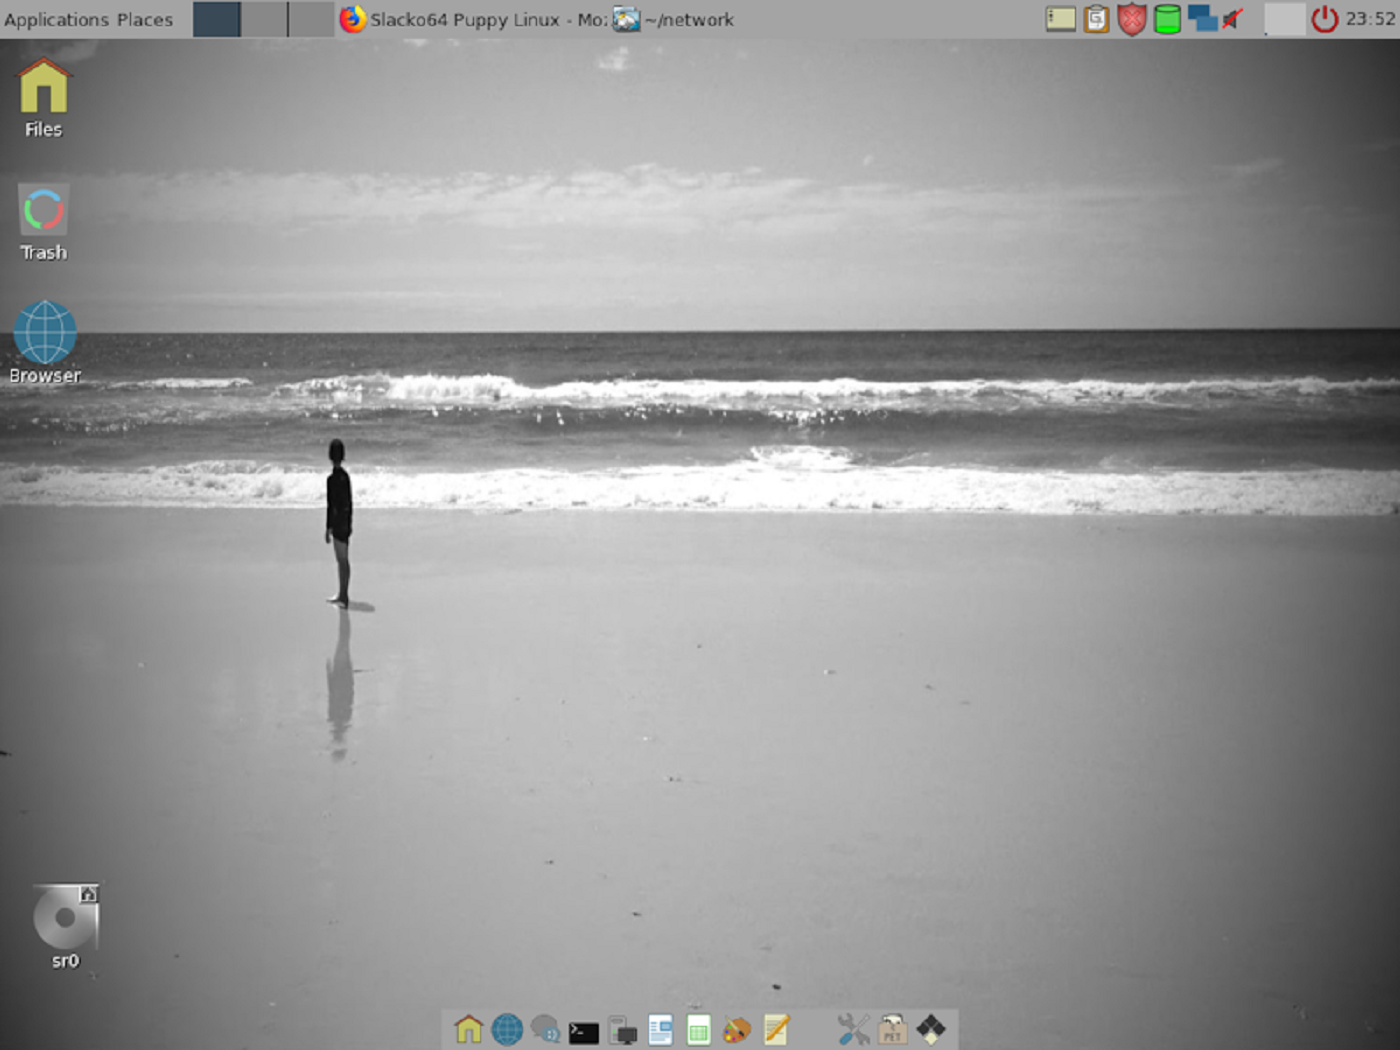 Ecco Puppy Linux 7.0 “Slacko”: perfetto per PC con architettura a 32 bit